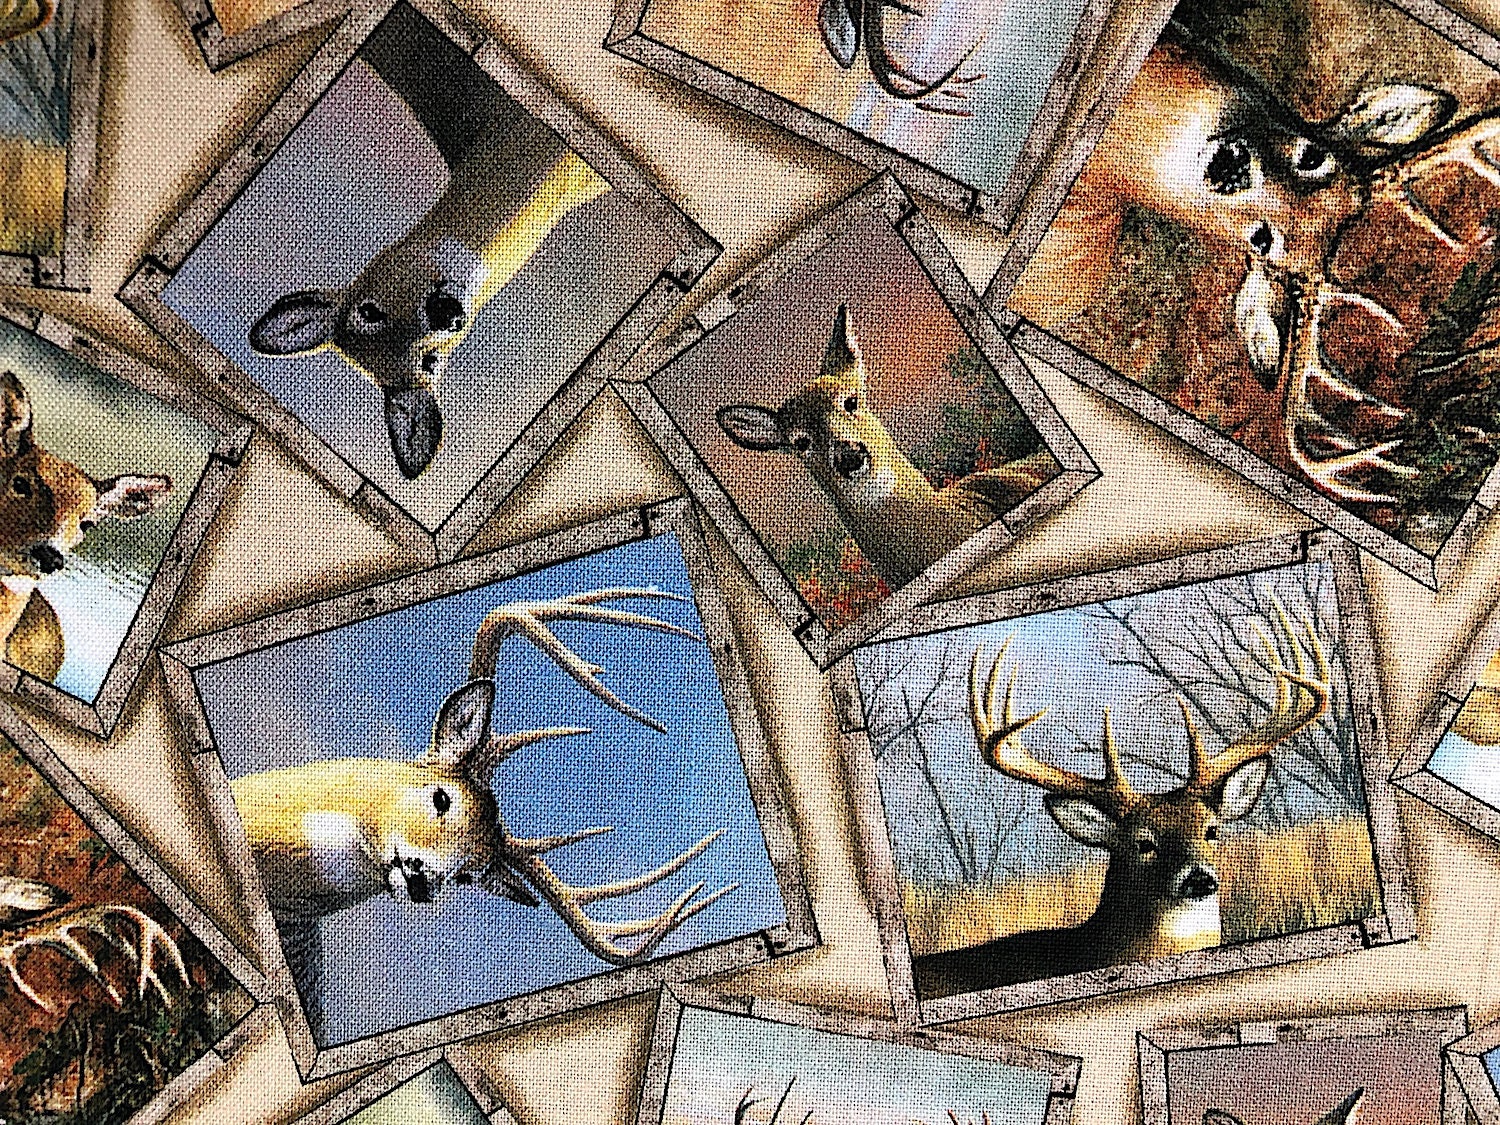 Close up of frames of deer.